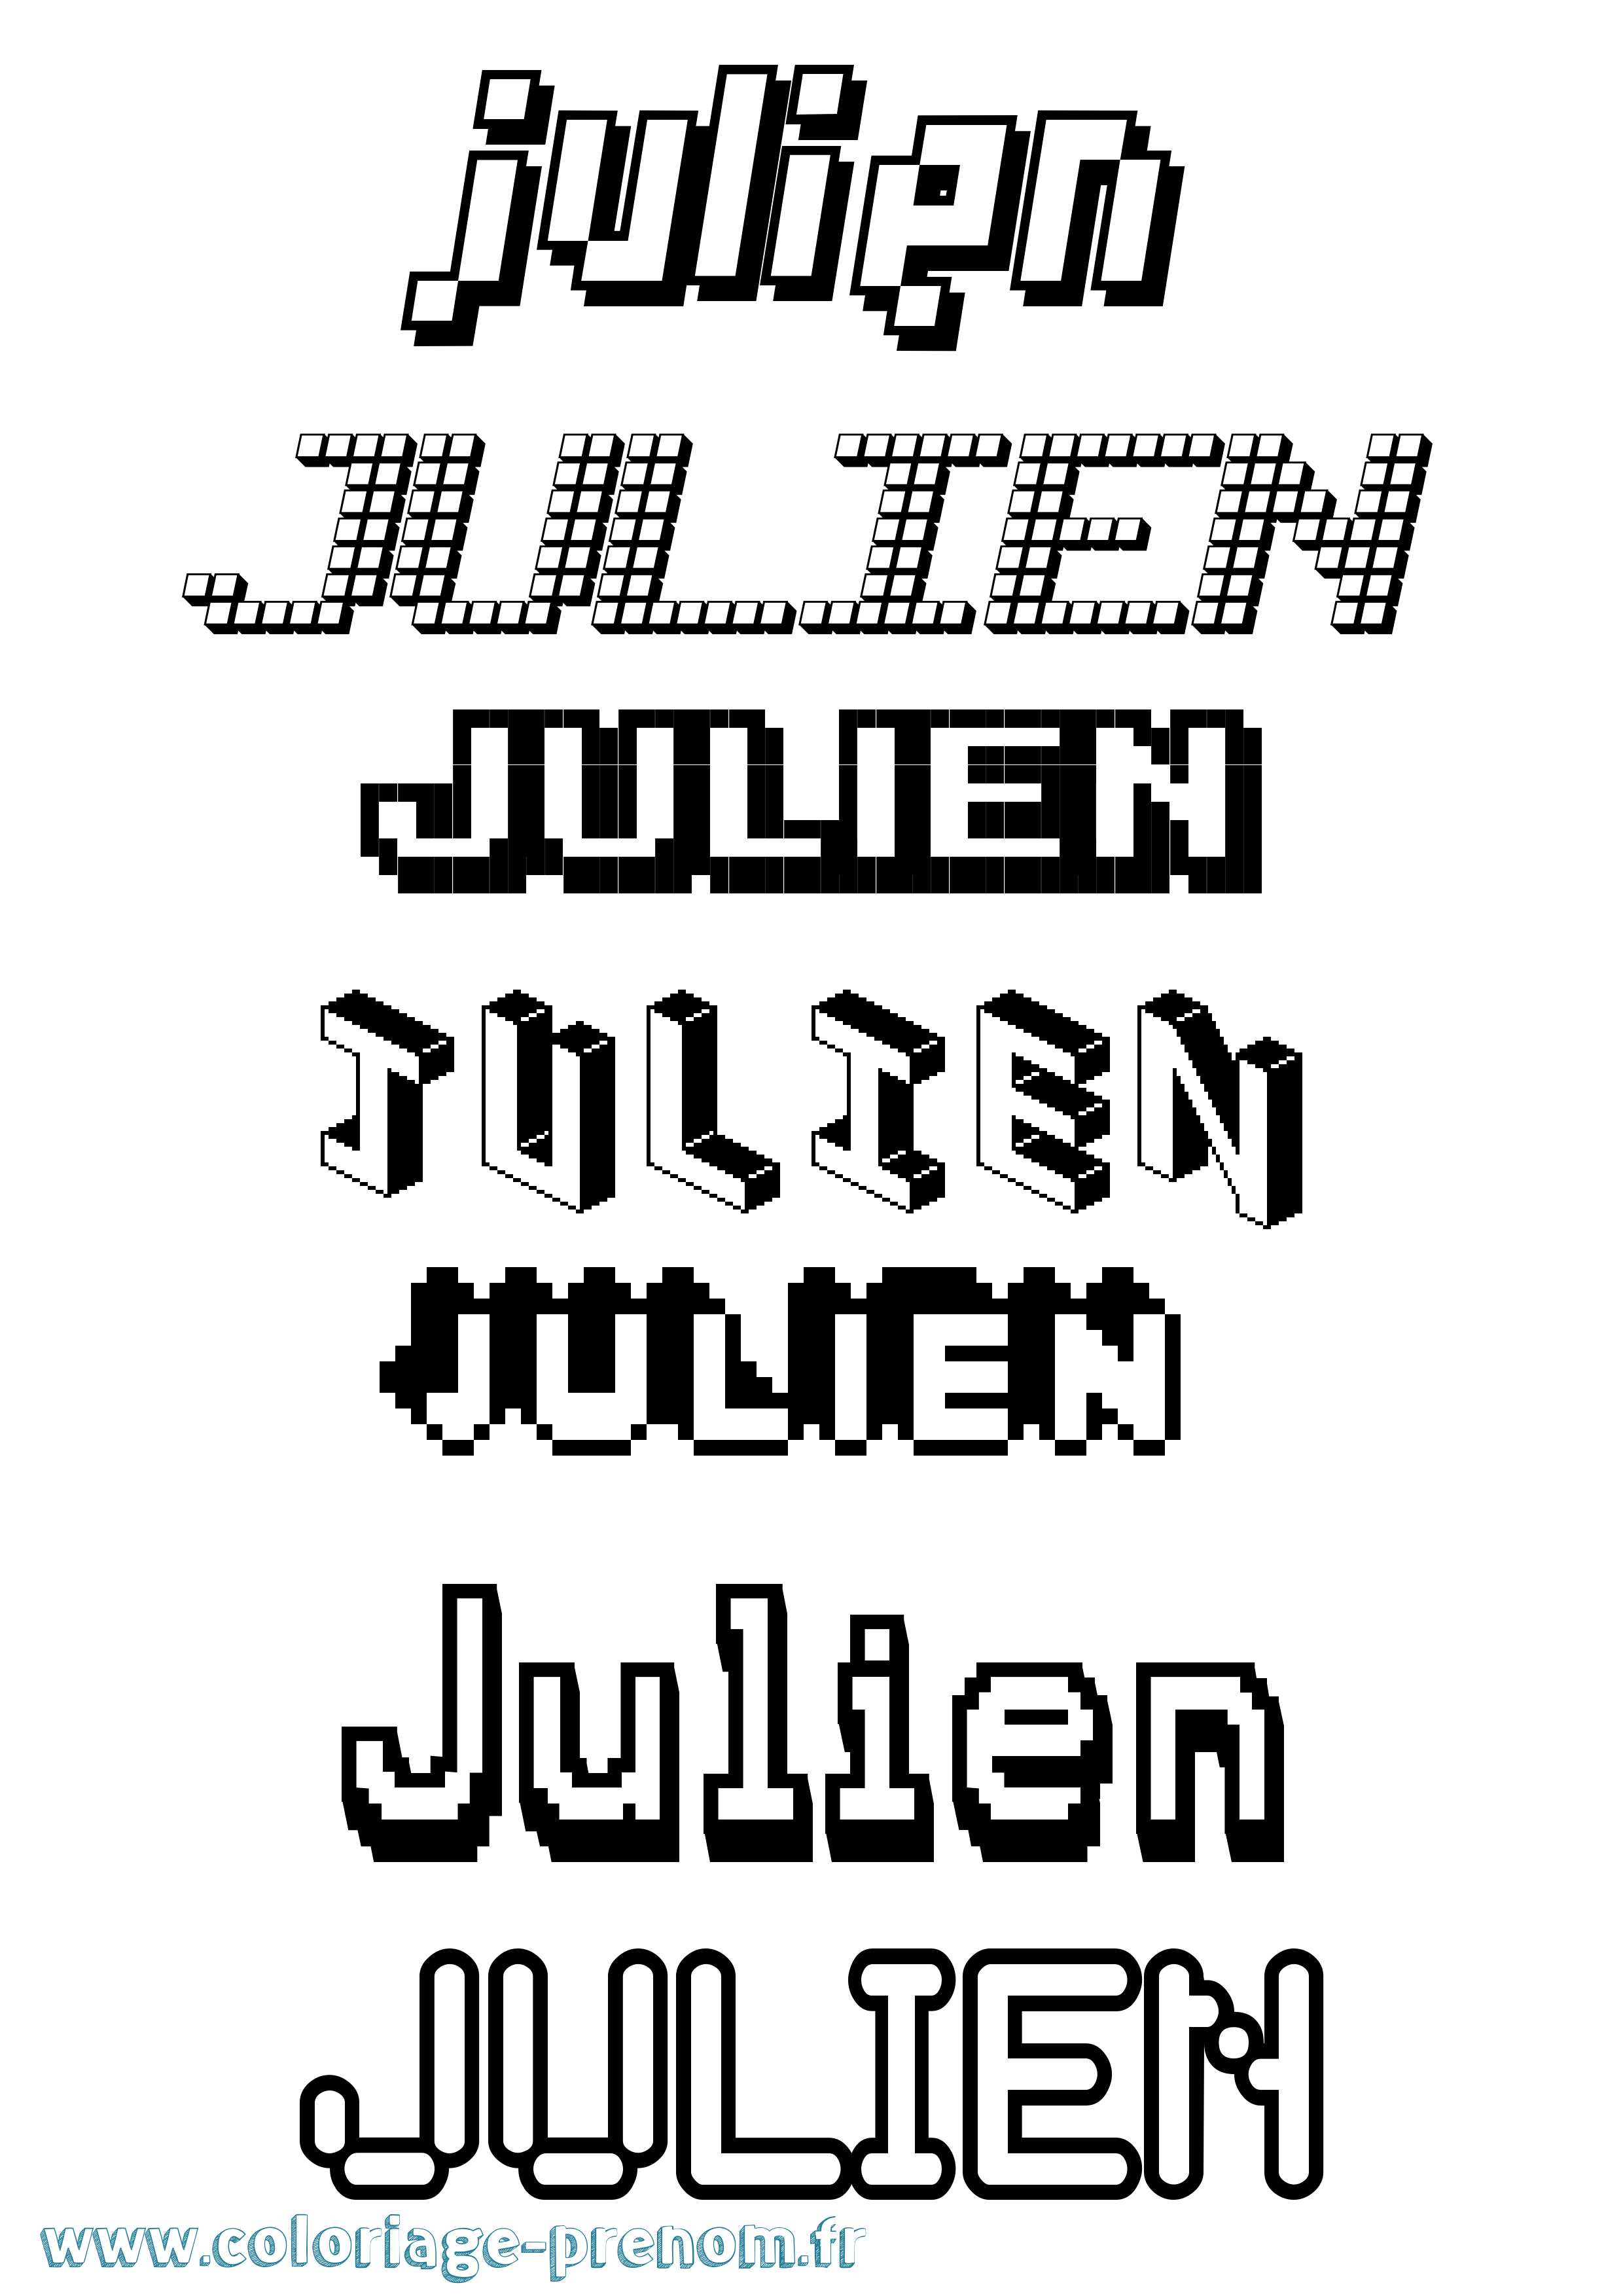 Coloriage prénom Julien Pixel